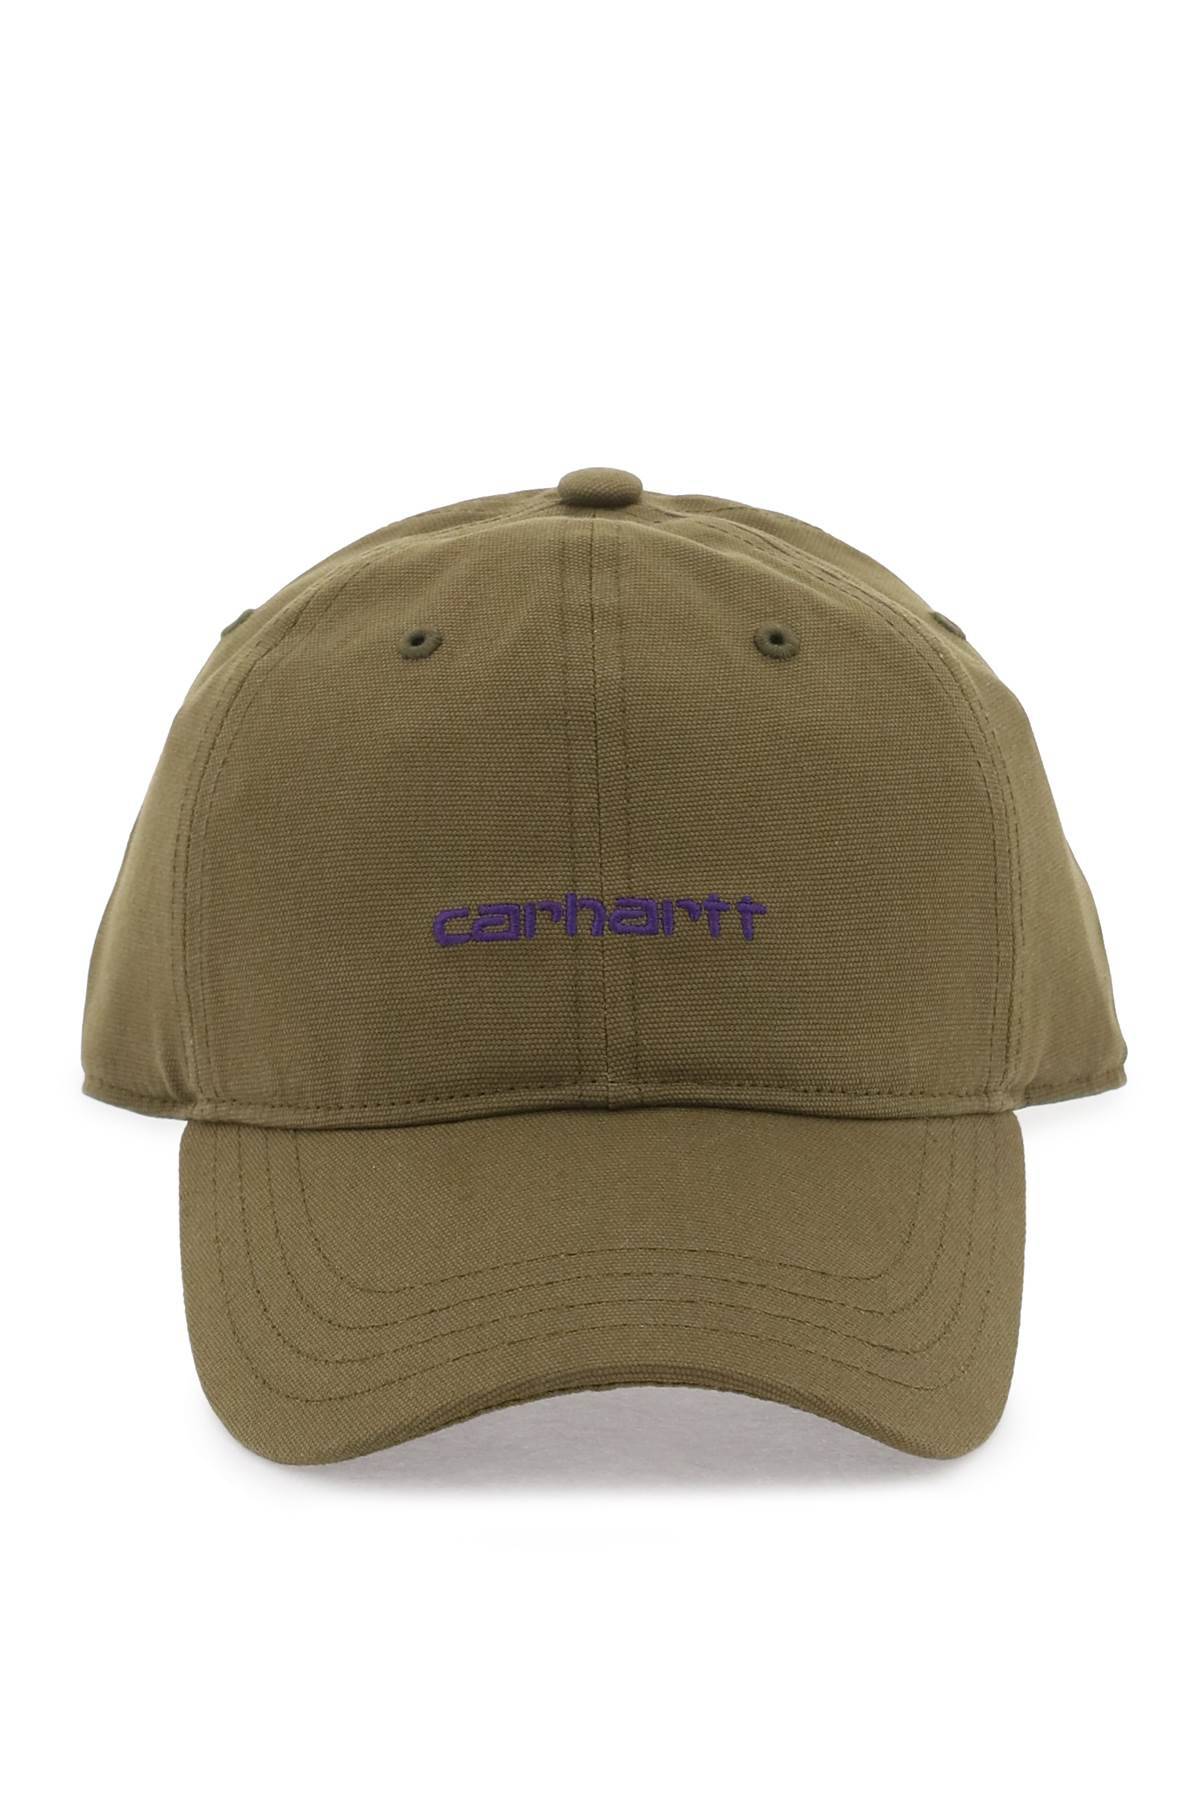 Carhartt WIP CARHARTT WIP canvas script baseball cap